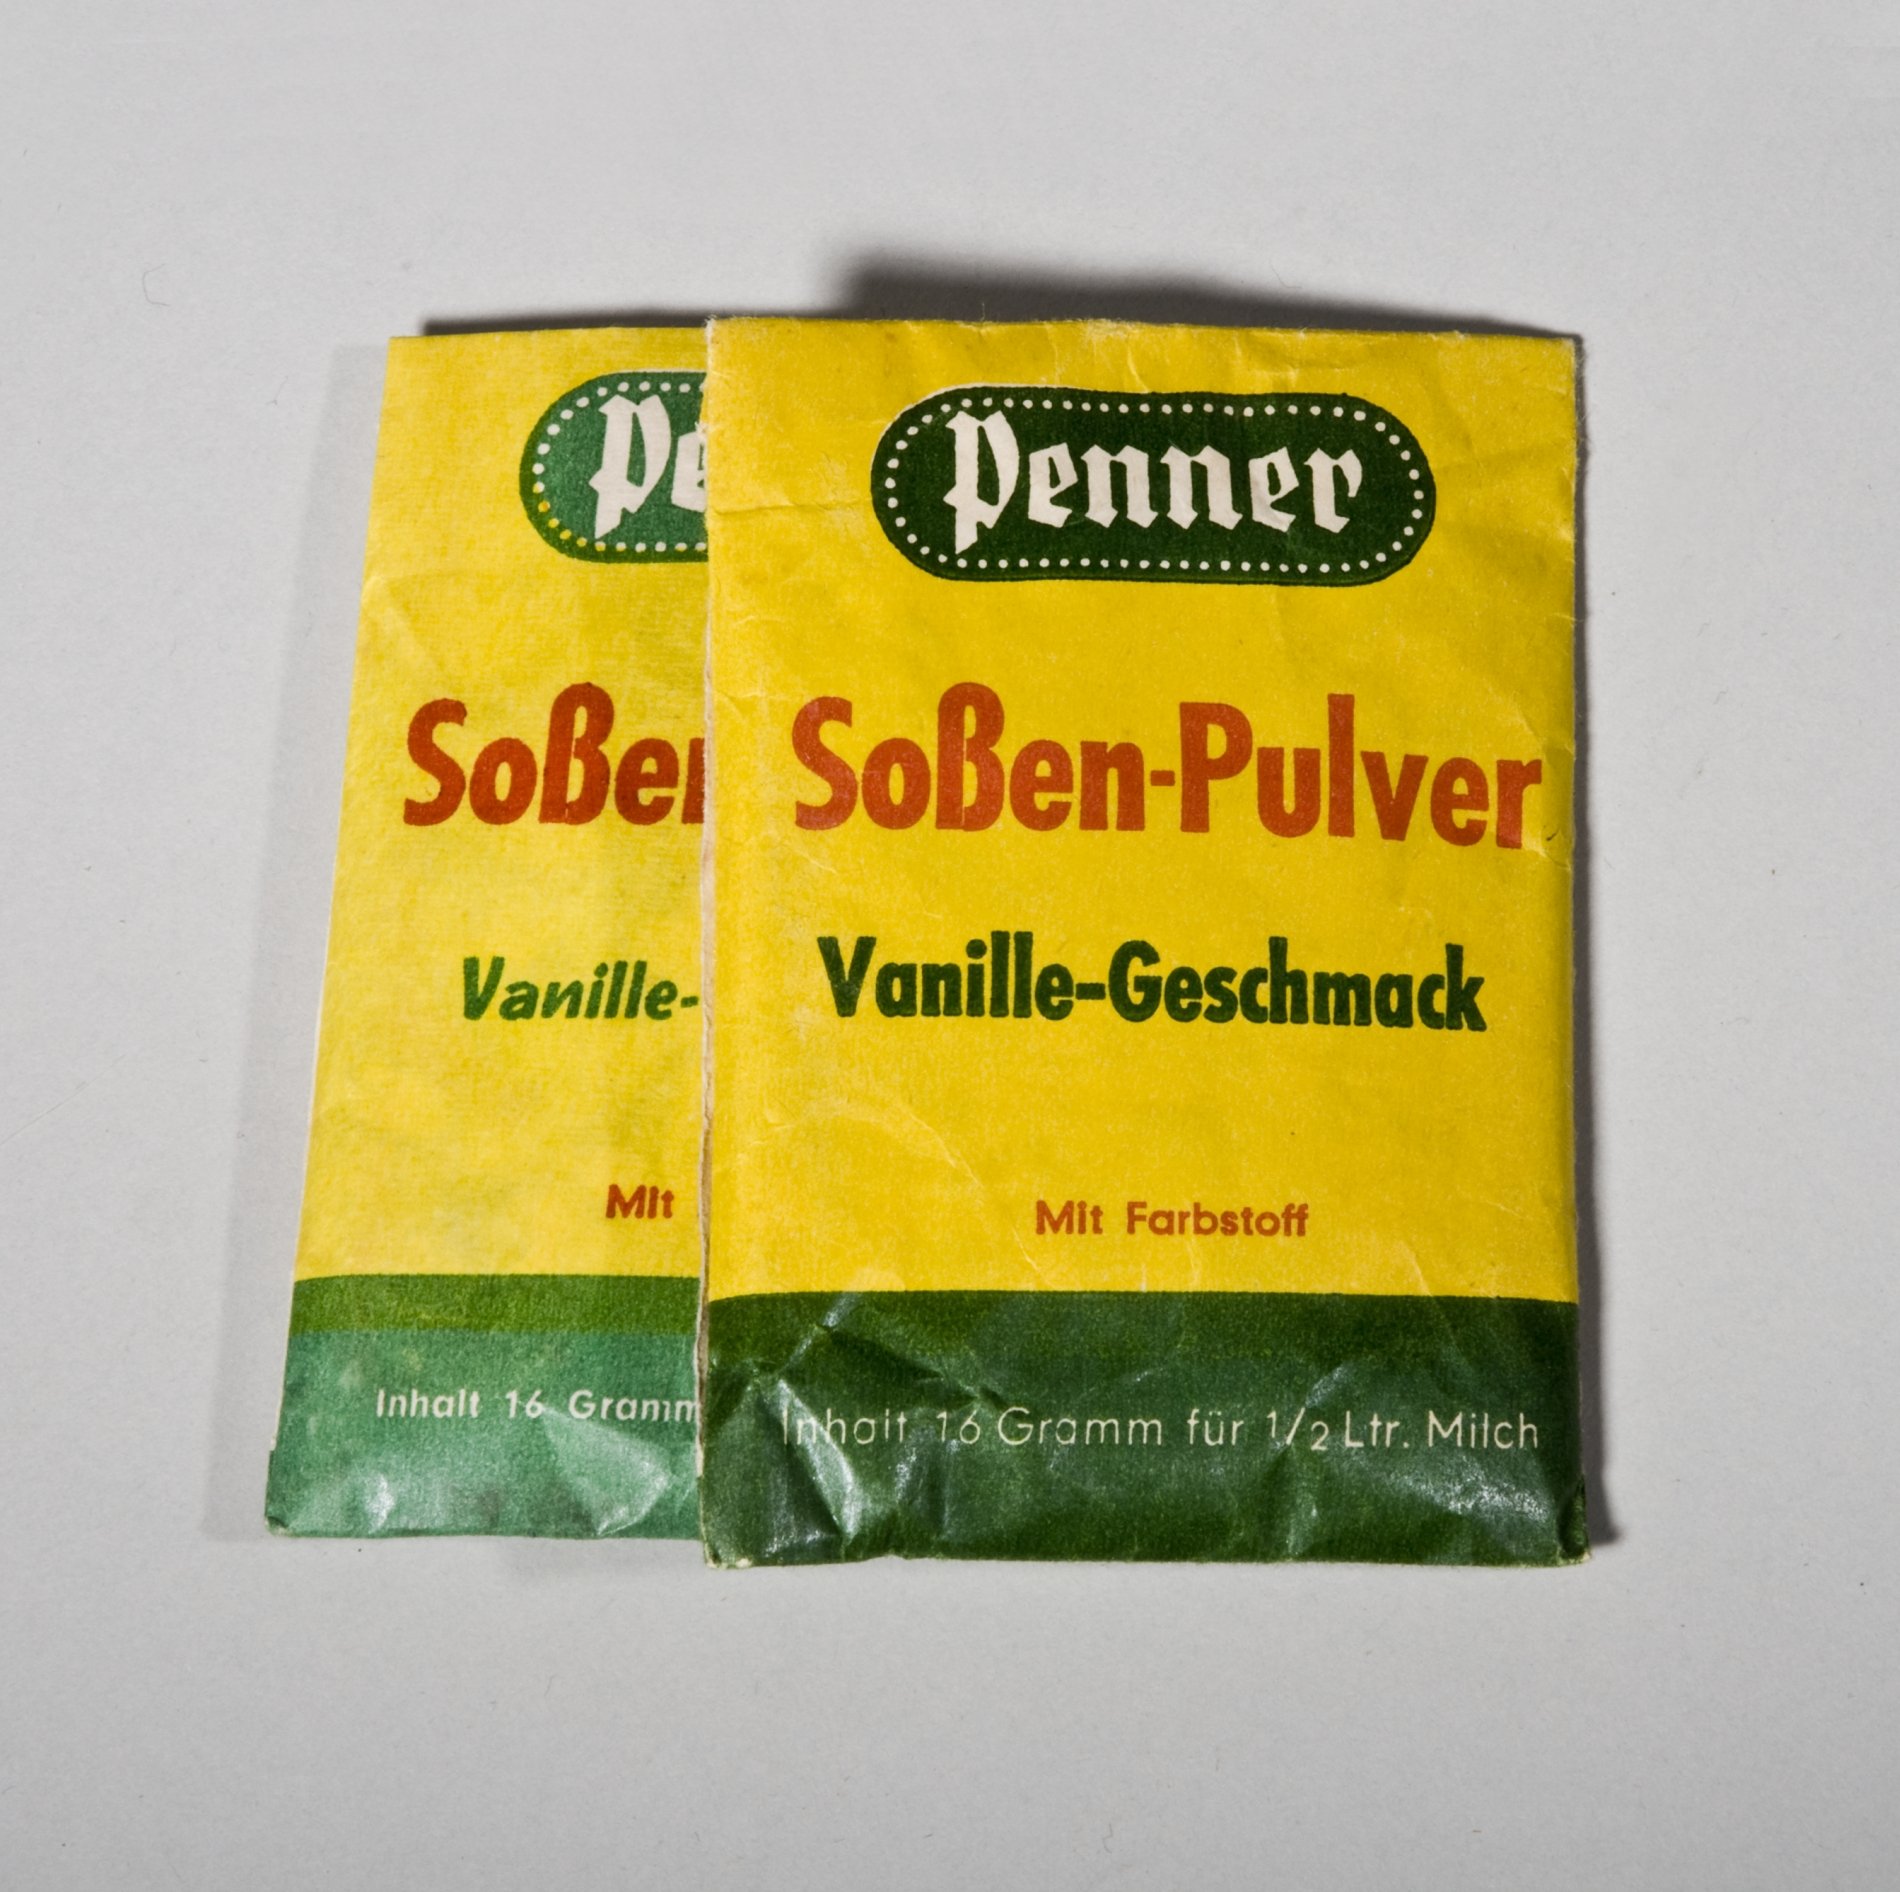 Päckchen "Soßen-Pulver Vanille-Geschmack" der Firma "Penner" (Stiftung Domäne Dahlem - Landgut und Museum, Weiternutzung nur mit Genehmigung des Museums CC BY-NC-SA)